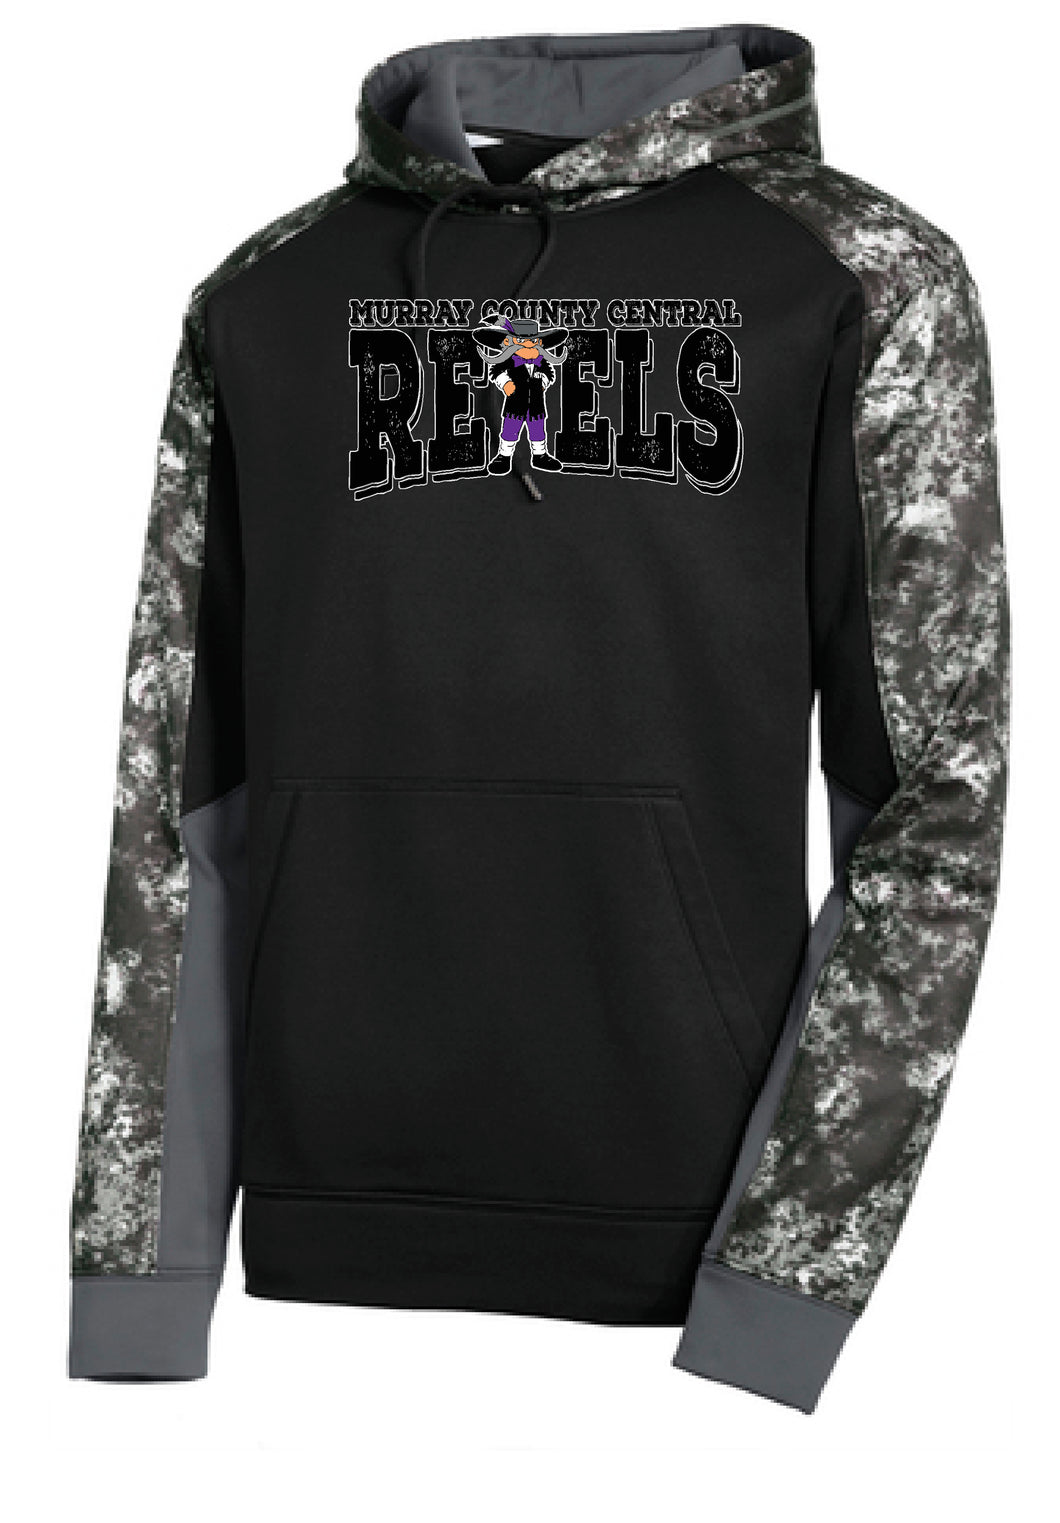 MCC Rebels Rudy SportTek Mineral Sweatshirt - BLACK